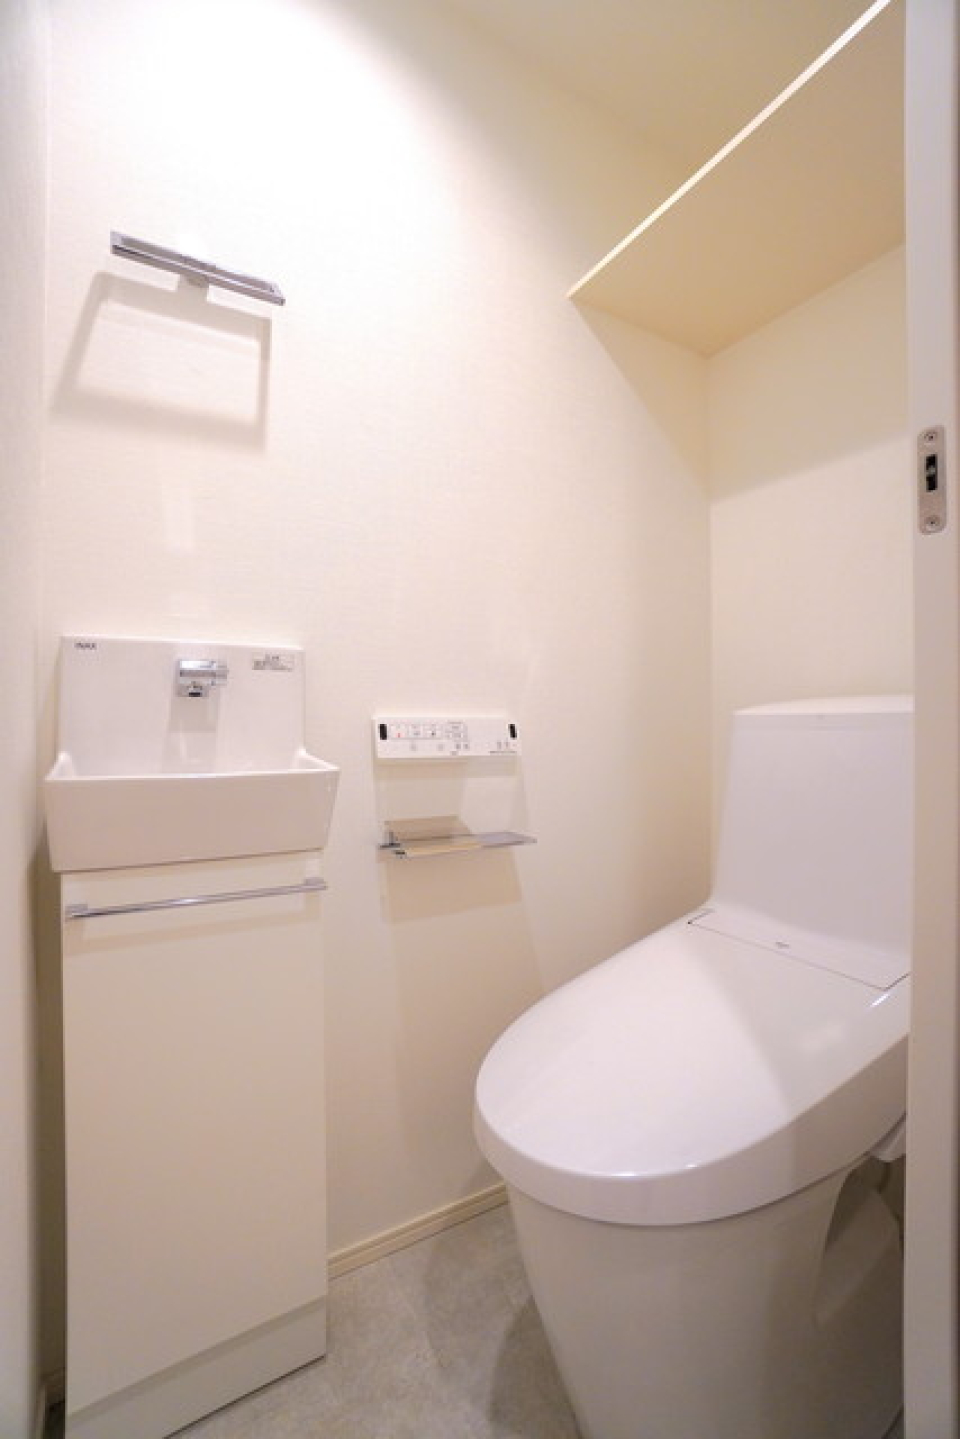 シンプルな造りのトイレです。
※写真は同タイプ住戸です。